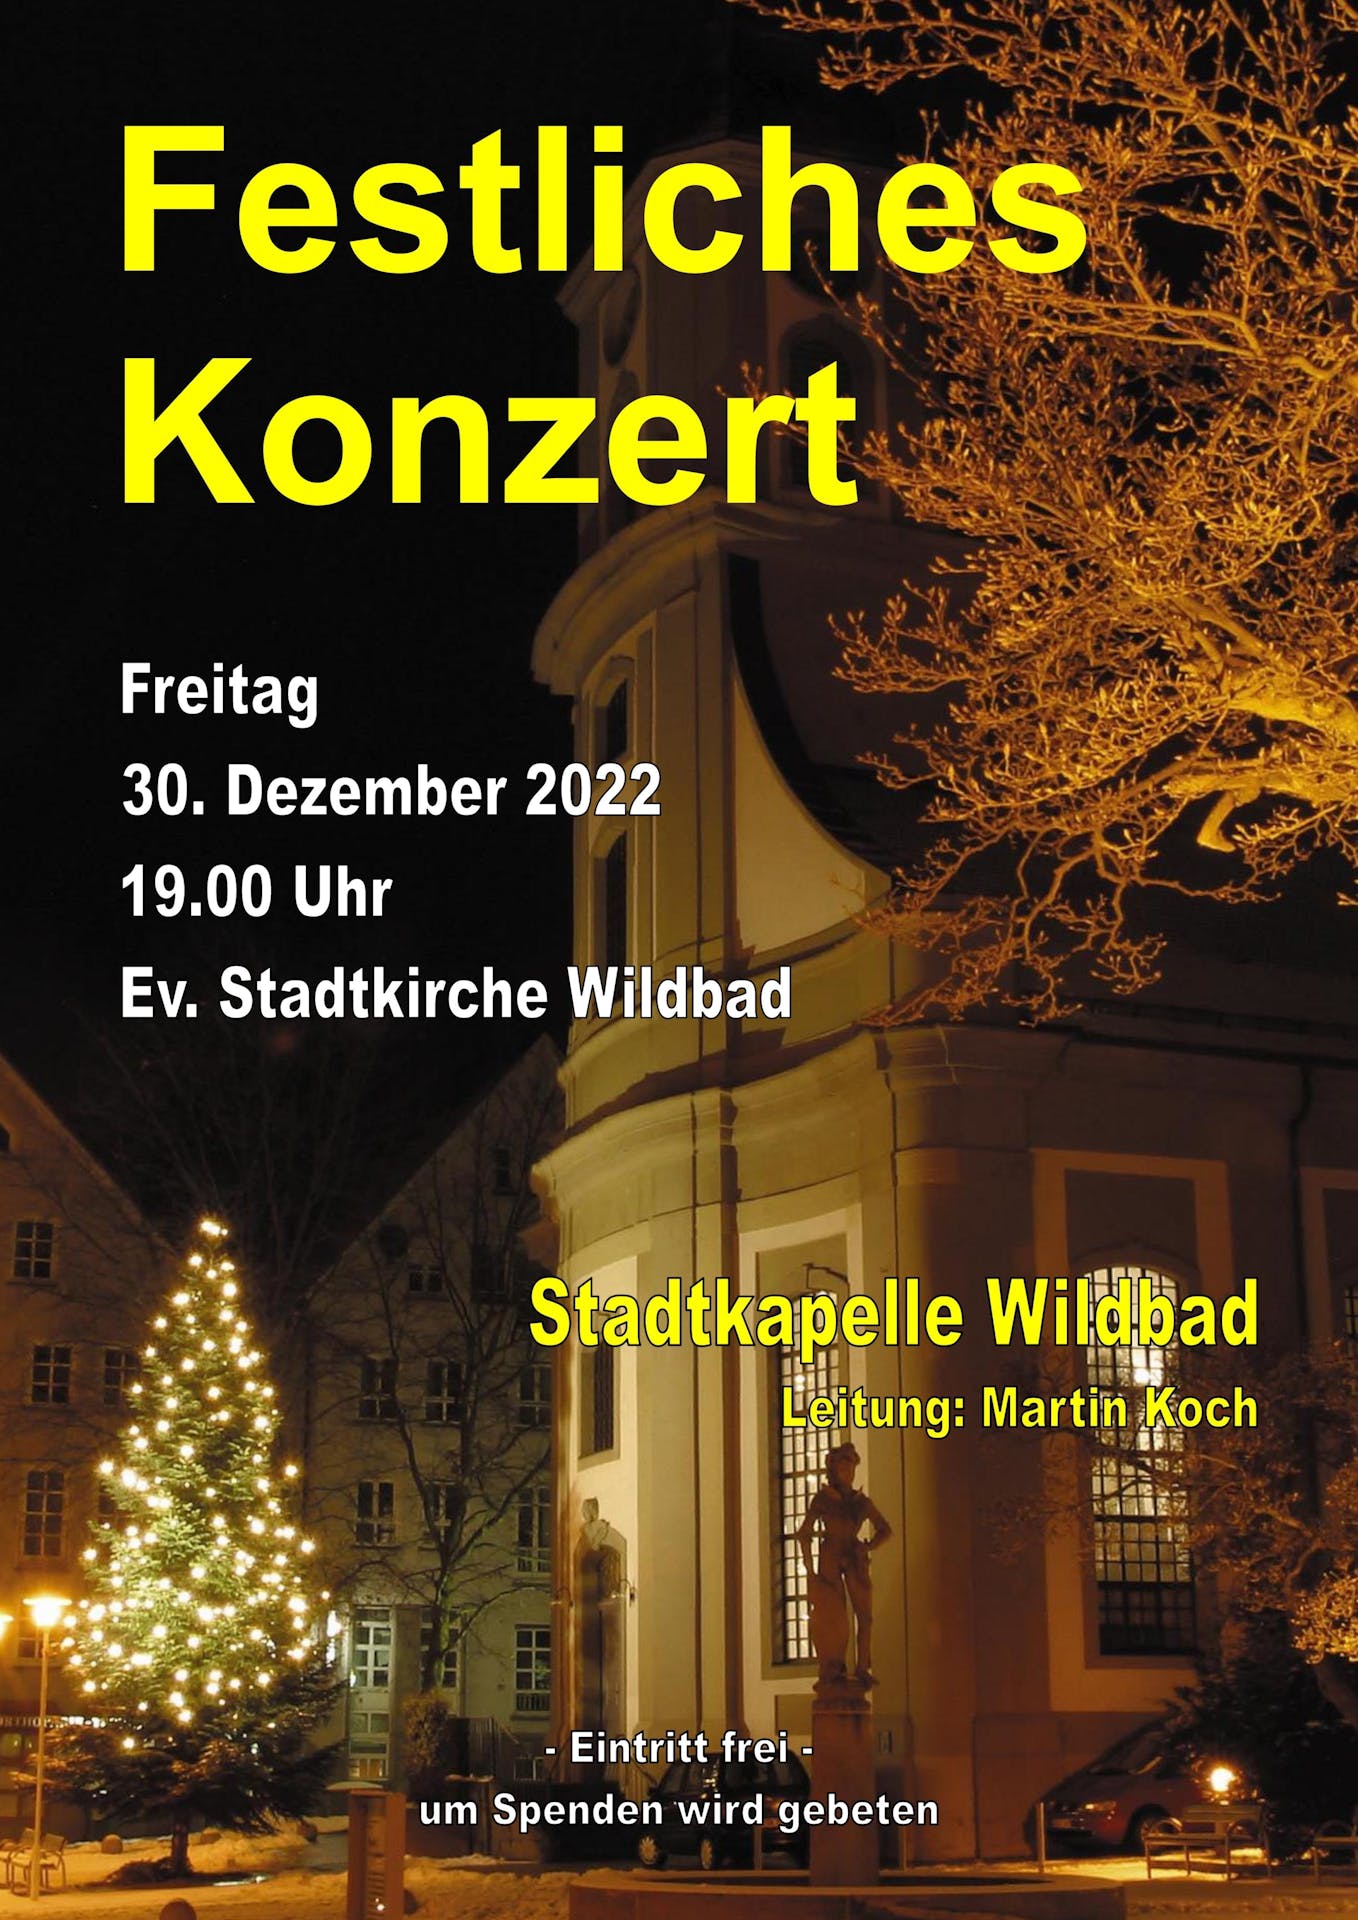 Festliches Konzert der Stadtkapelle Wildbad